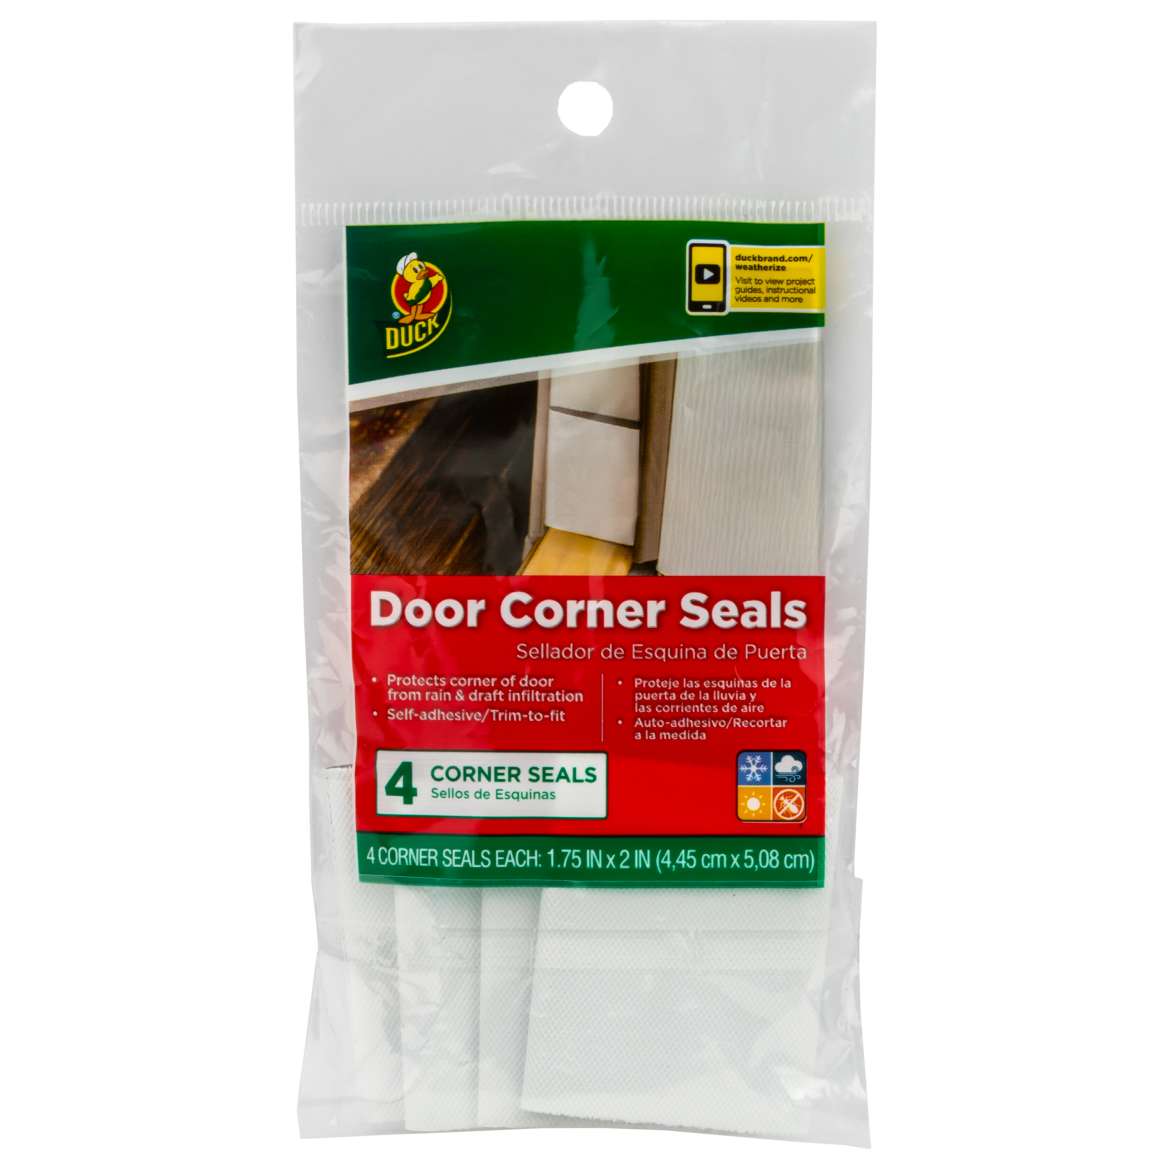 Duck® Brand Door Corner Seals